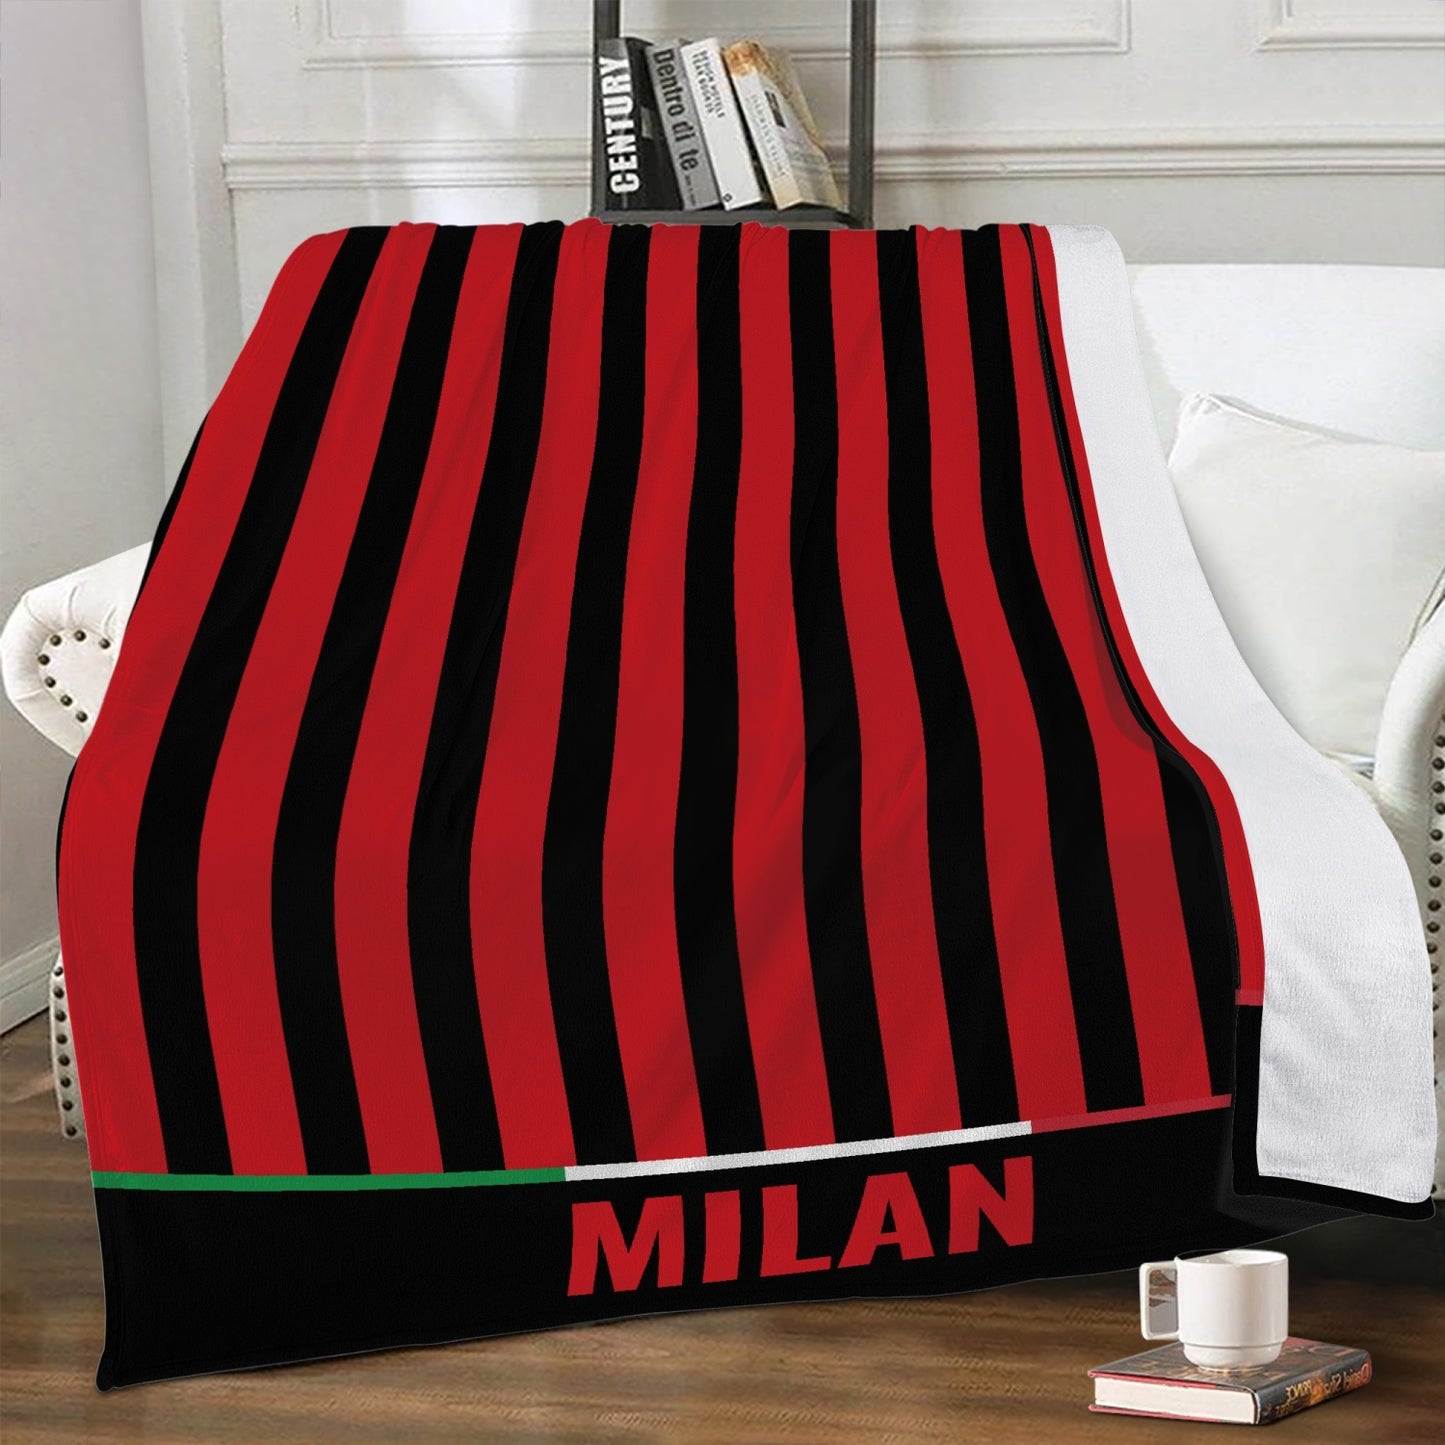 Milan Fleece Blanket